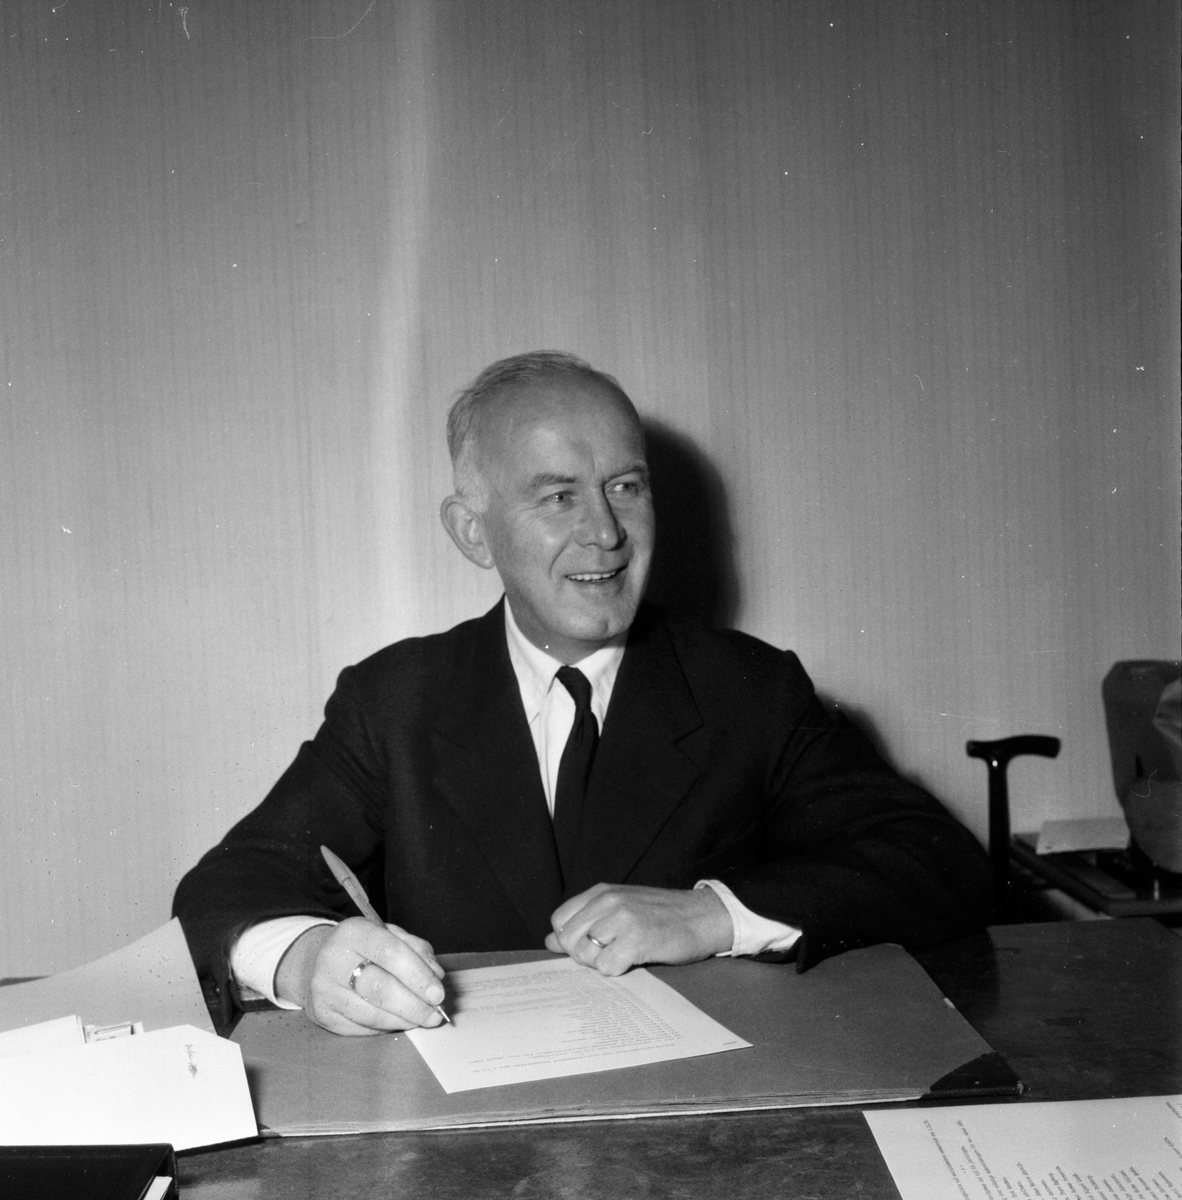 Socialvårdnämden i Bollnäs stad.
5/12 1958